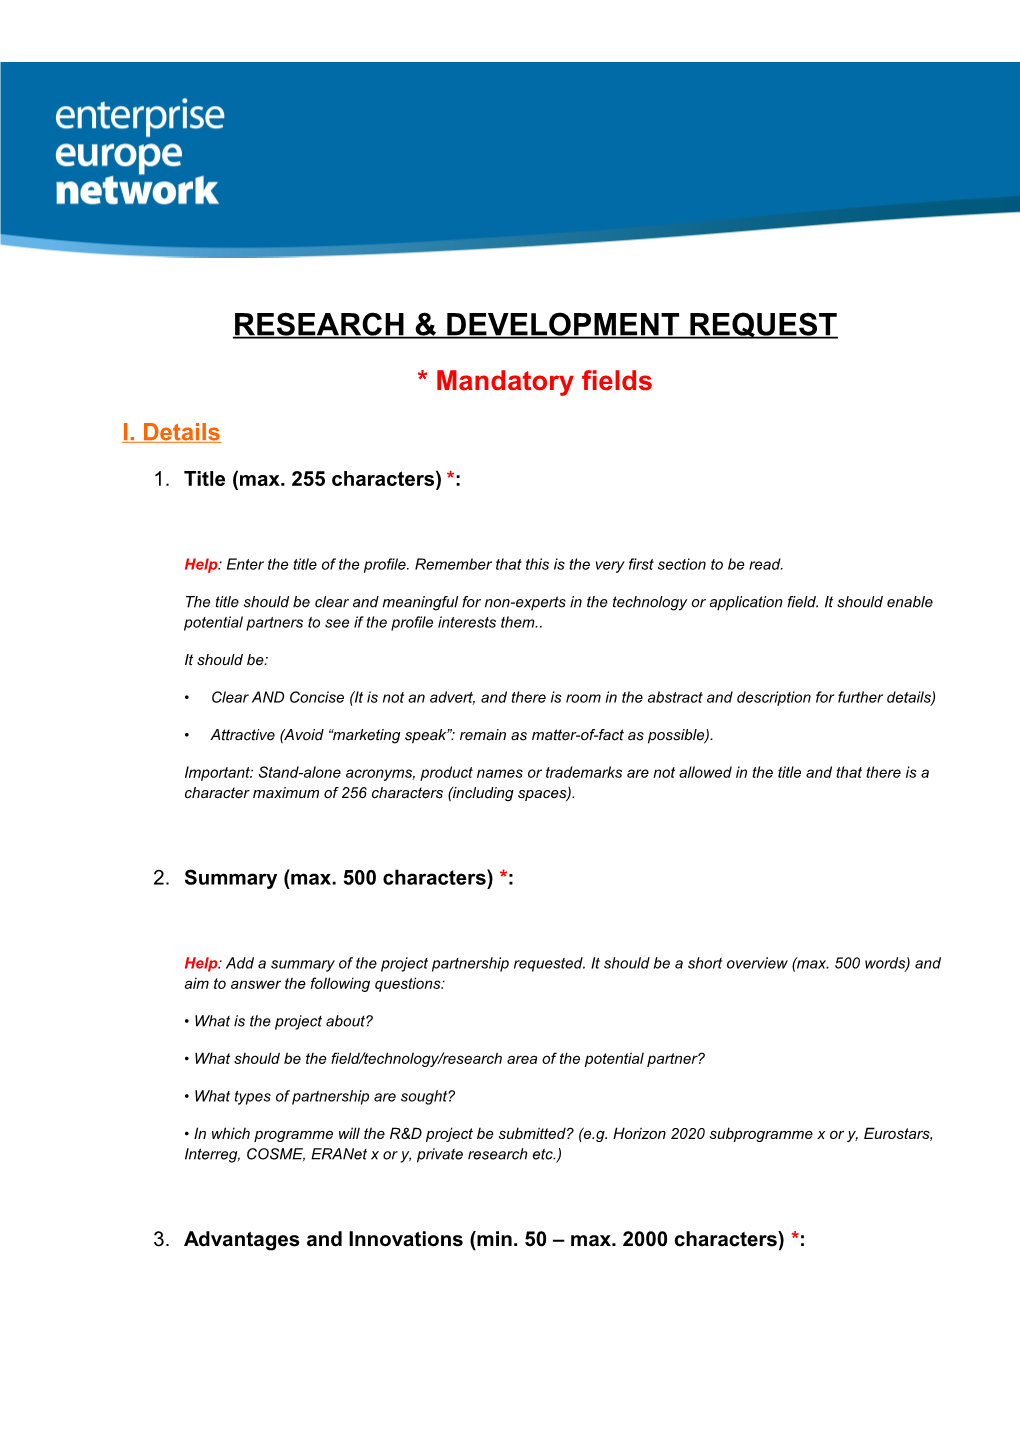 Research & Development Request